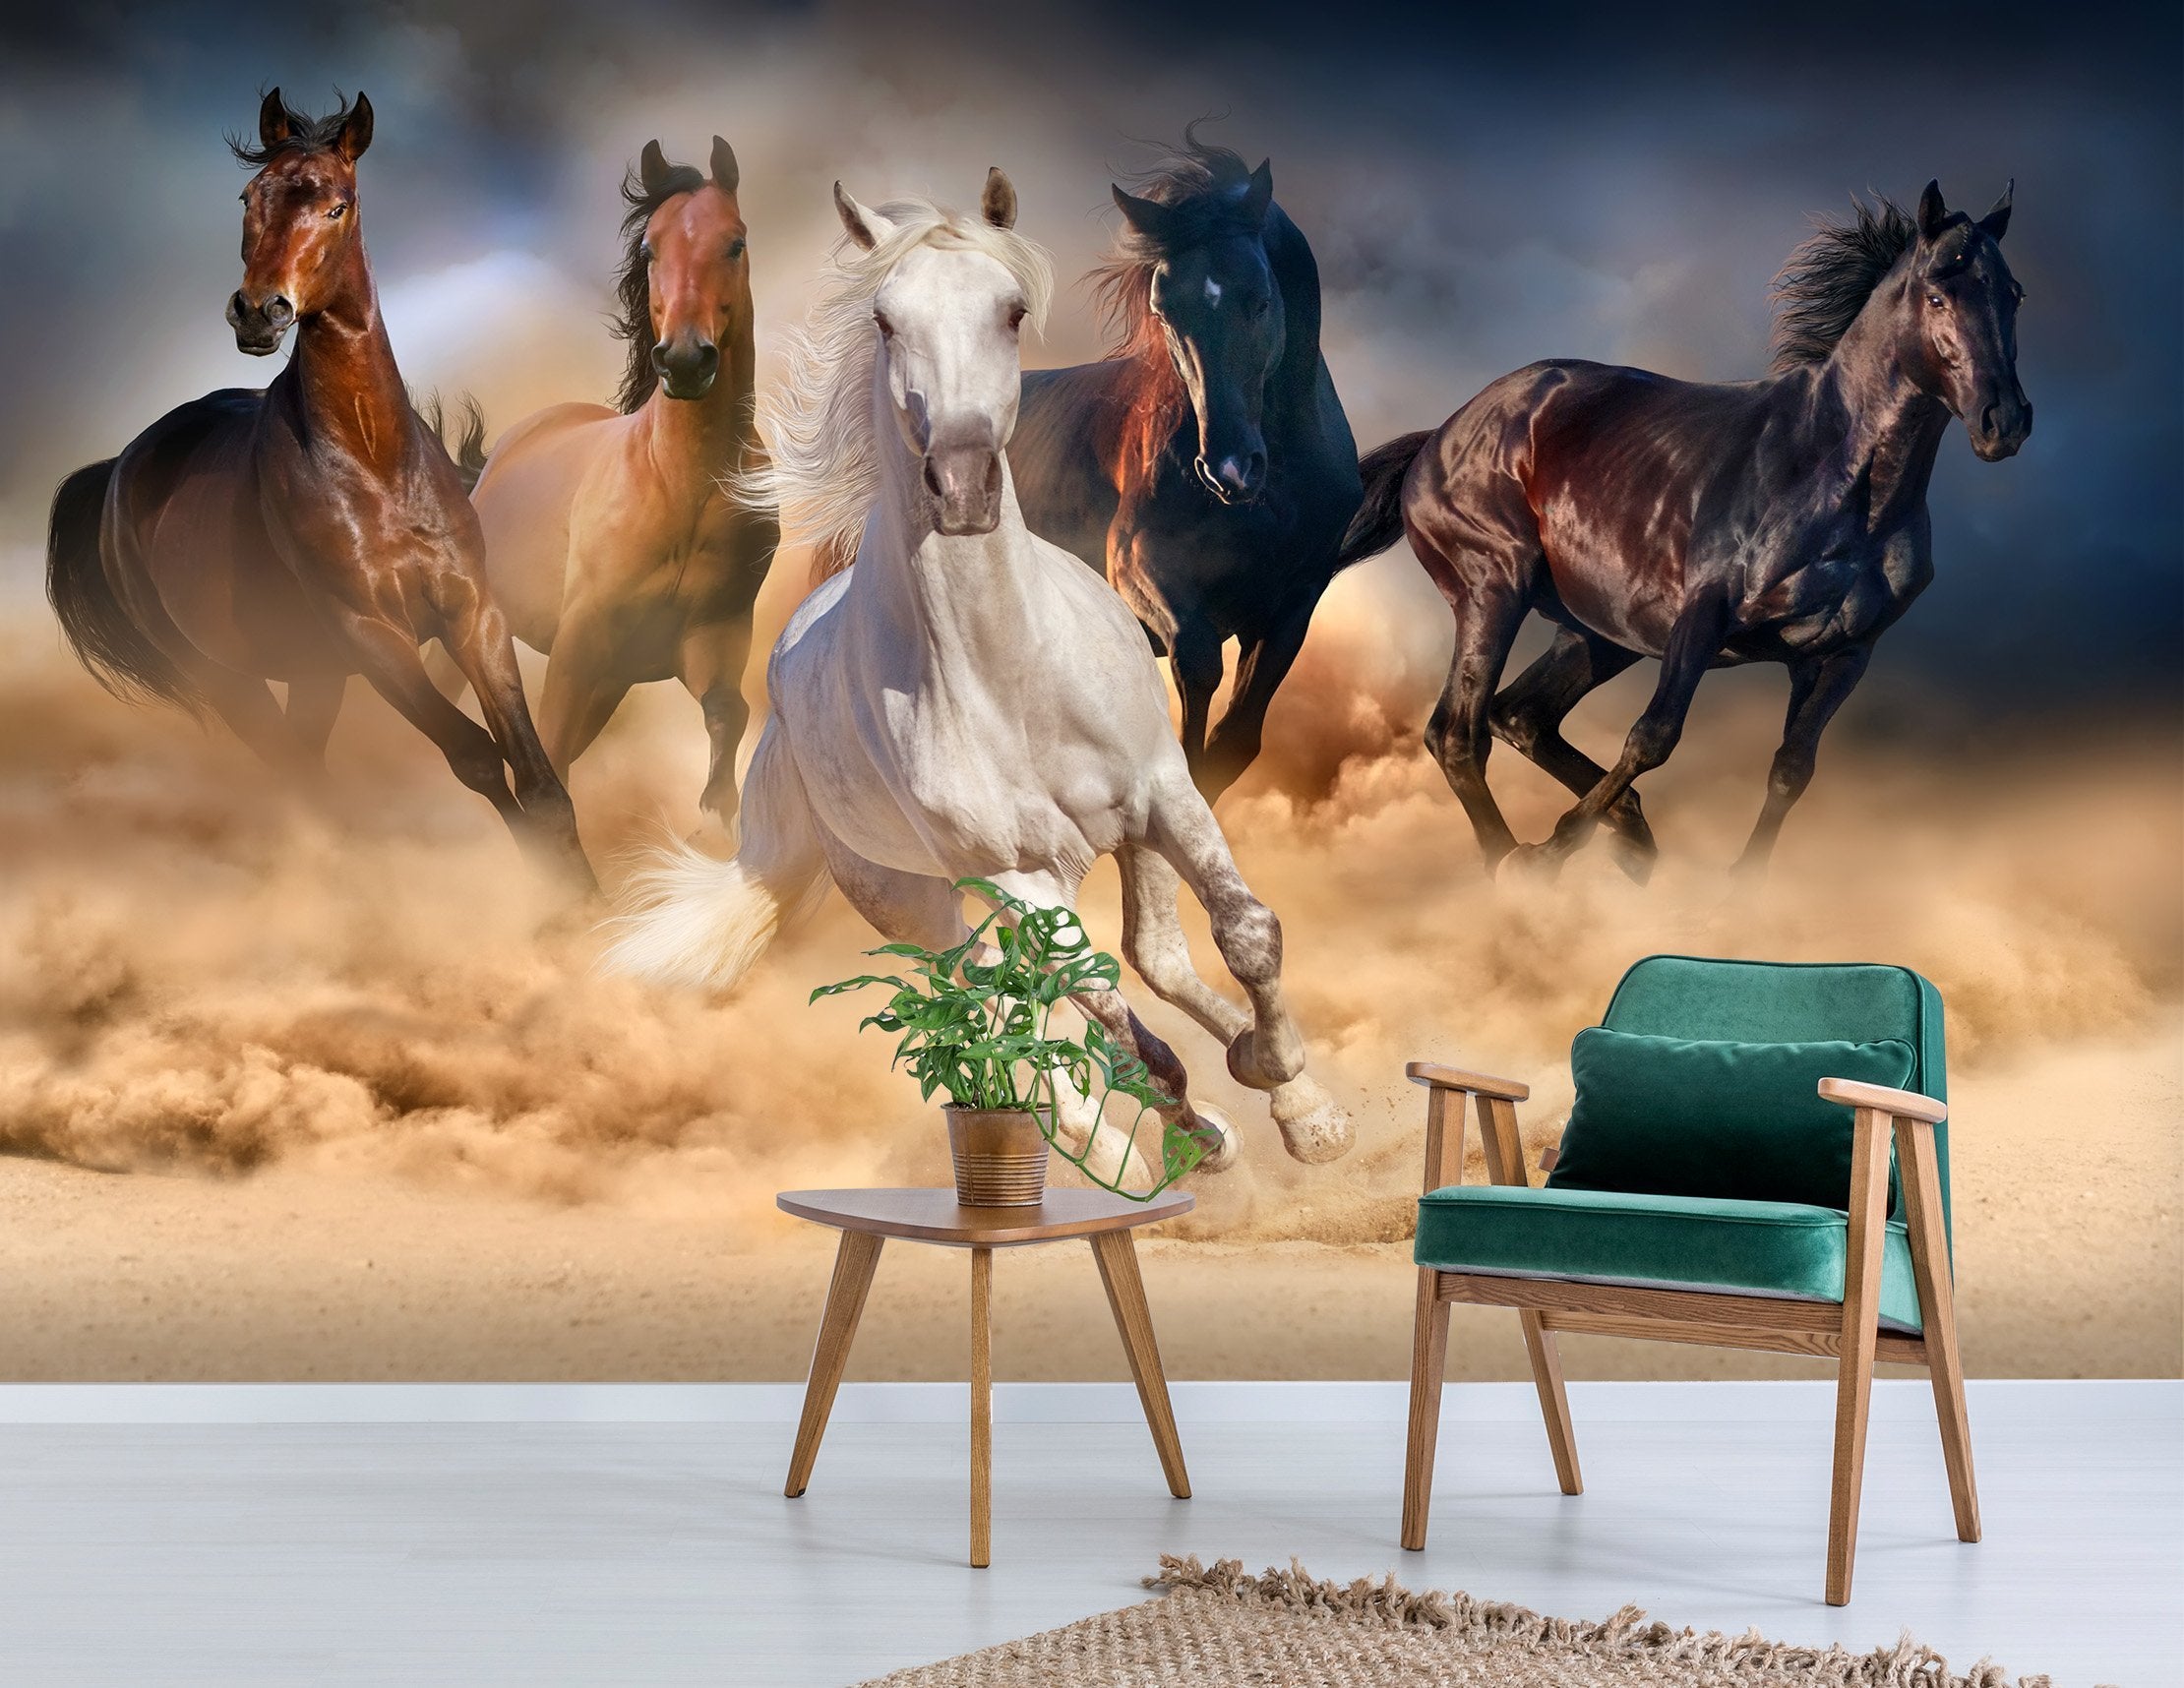 3D Running Horses 095 Wallpaper AJ Wallpaper 